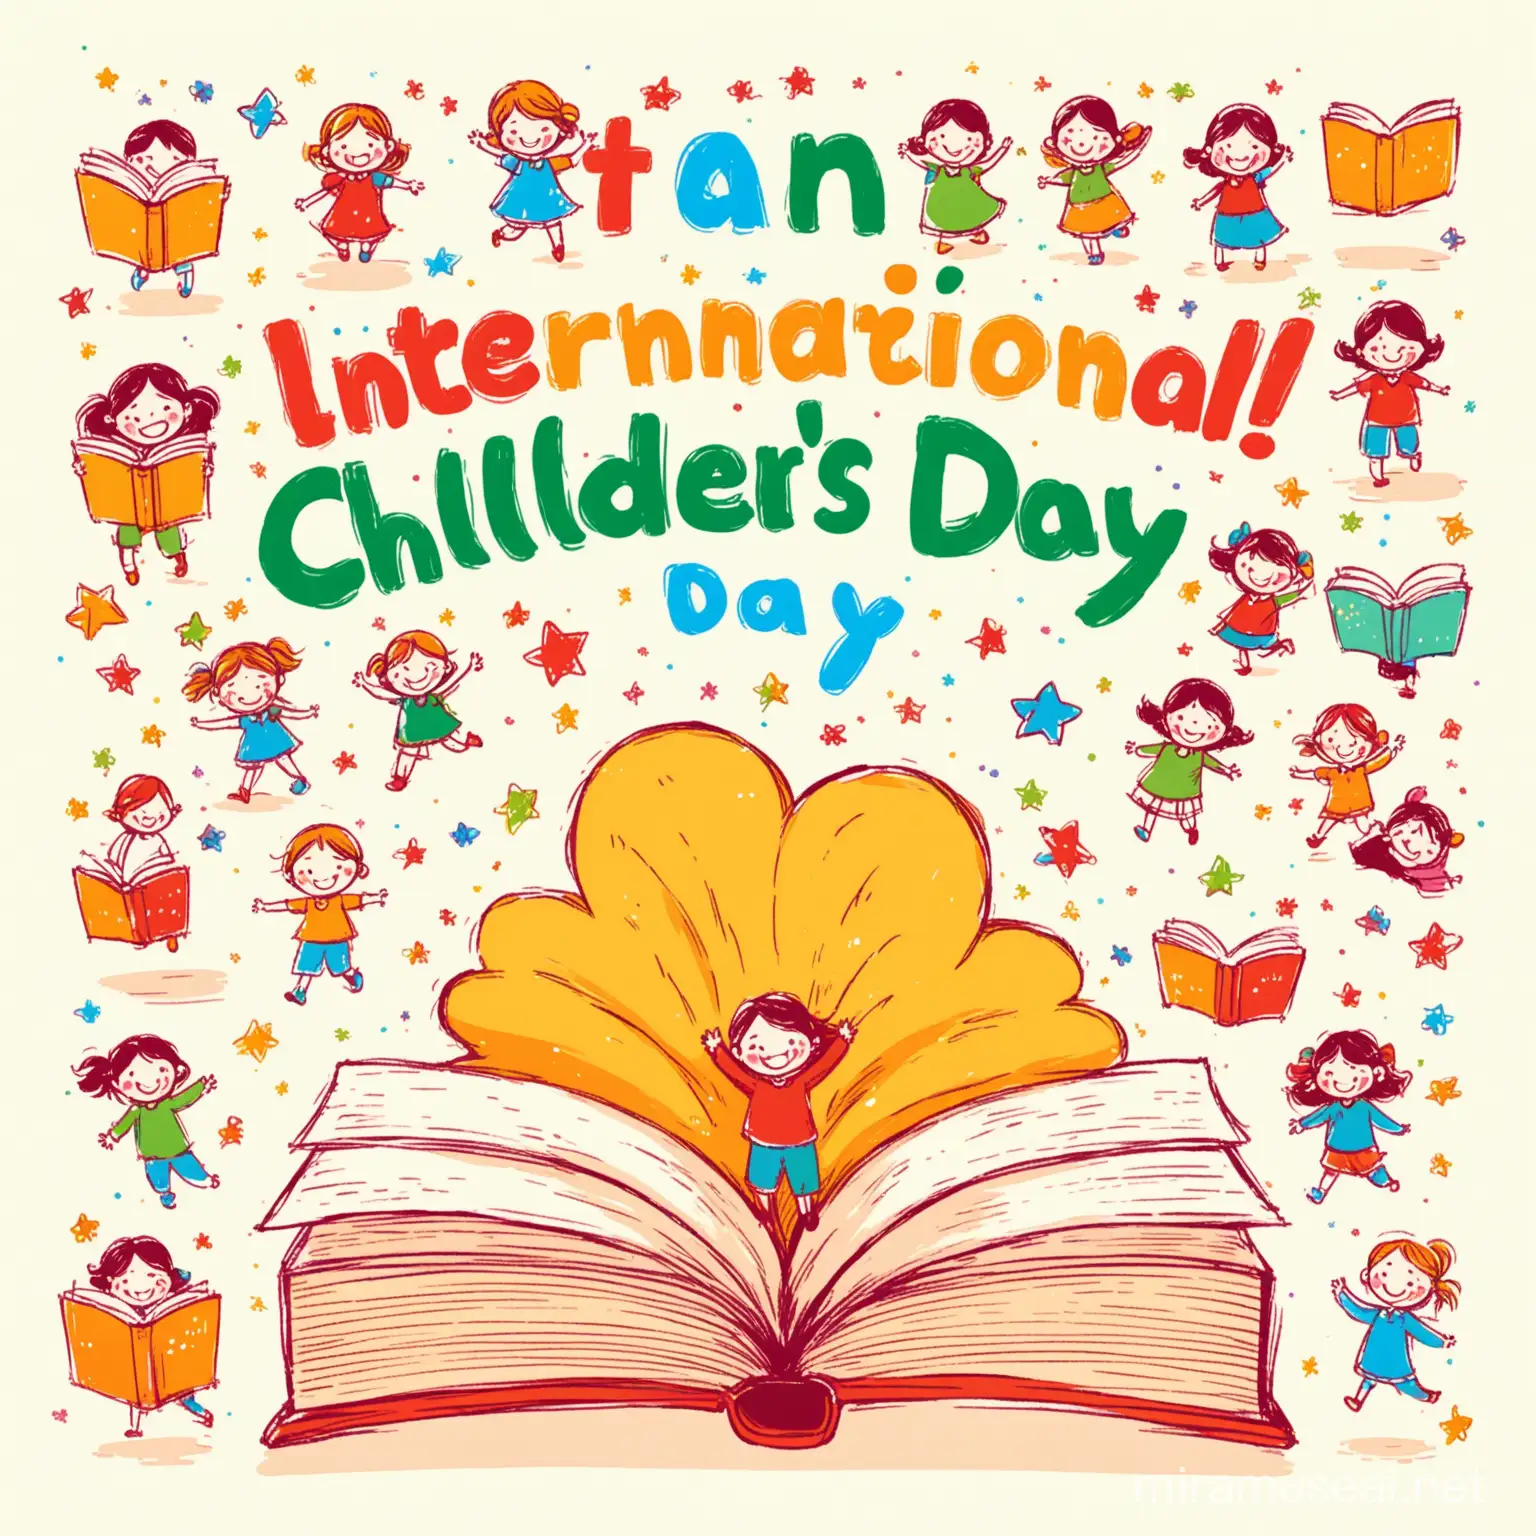 quero uma imagem que comemore o Dia Internacional do Livro Infantil, em estilo desenho infantil, colorido. Não colocar texto, só imagem